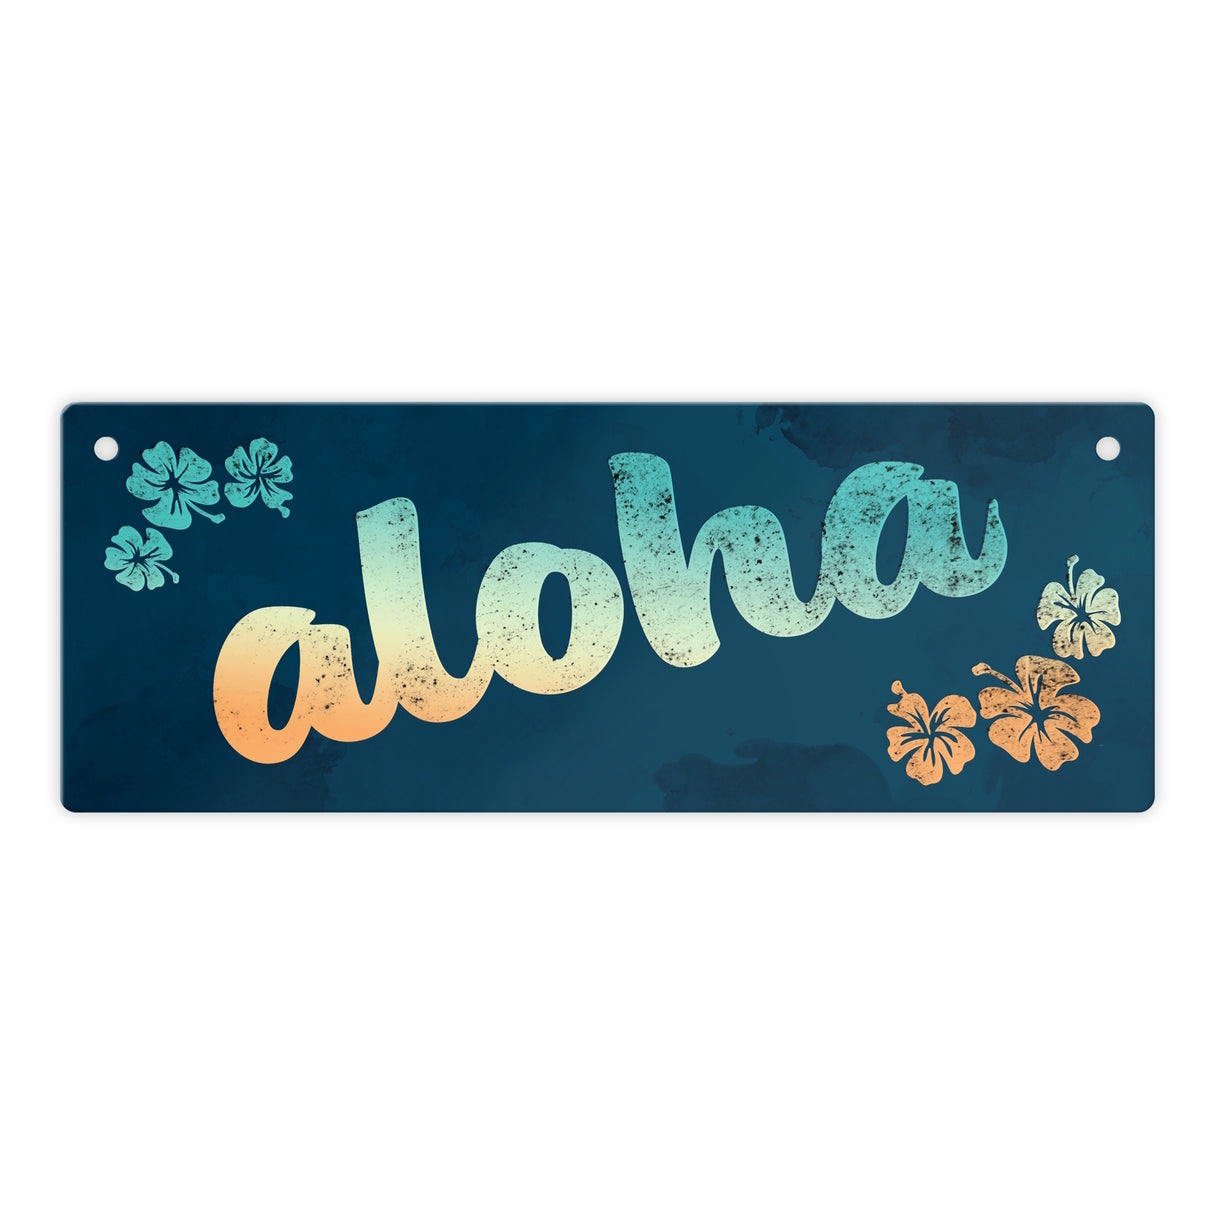 Metallschild mit Hawaii Design und Schriftzug - Aloha mit kleinen Blumen